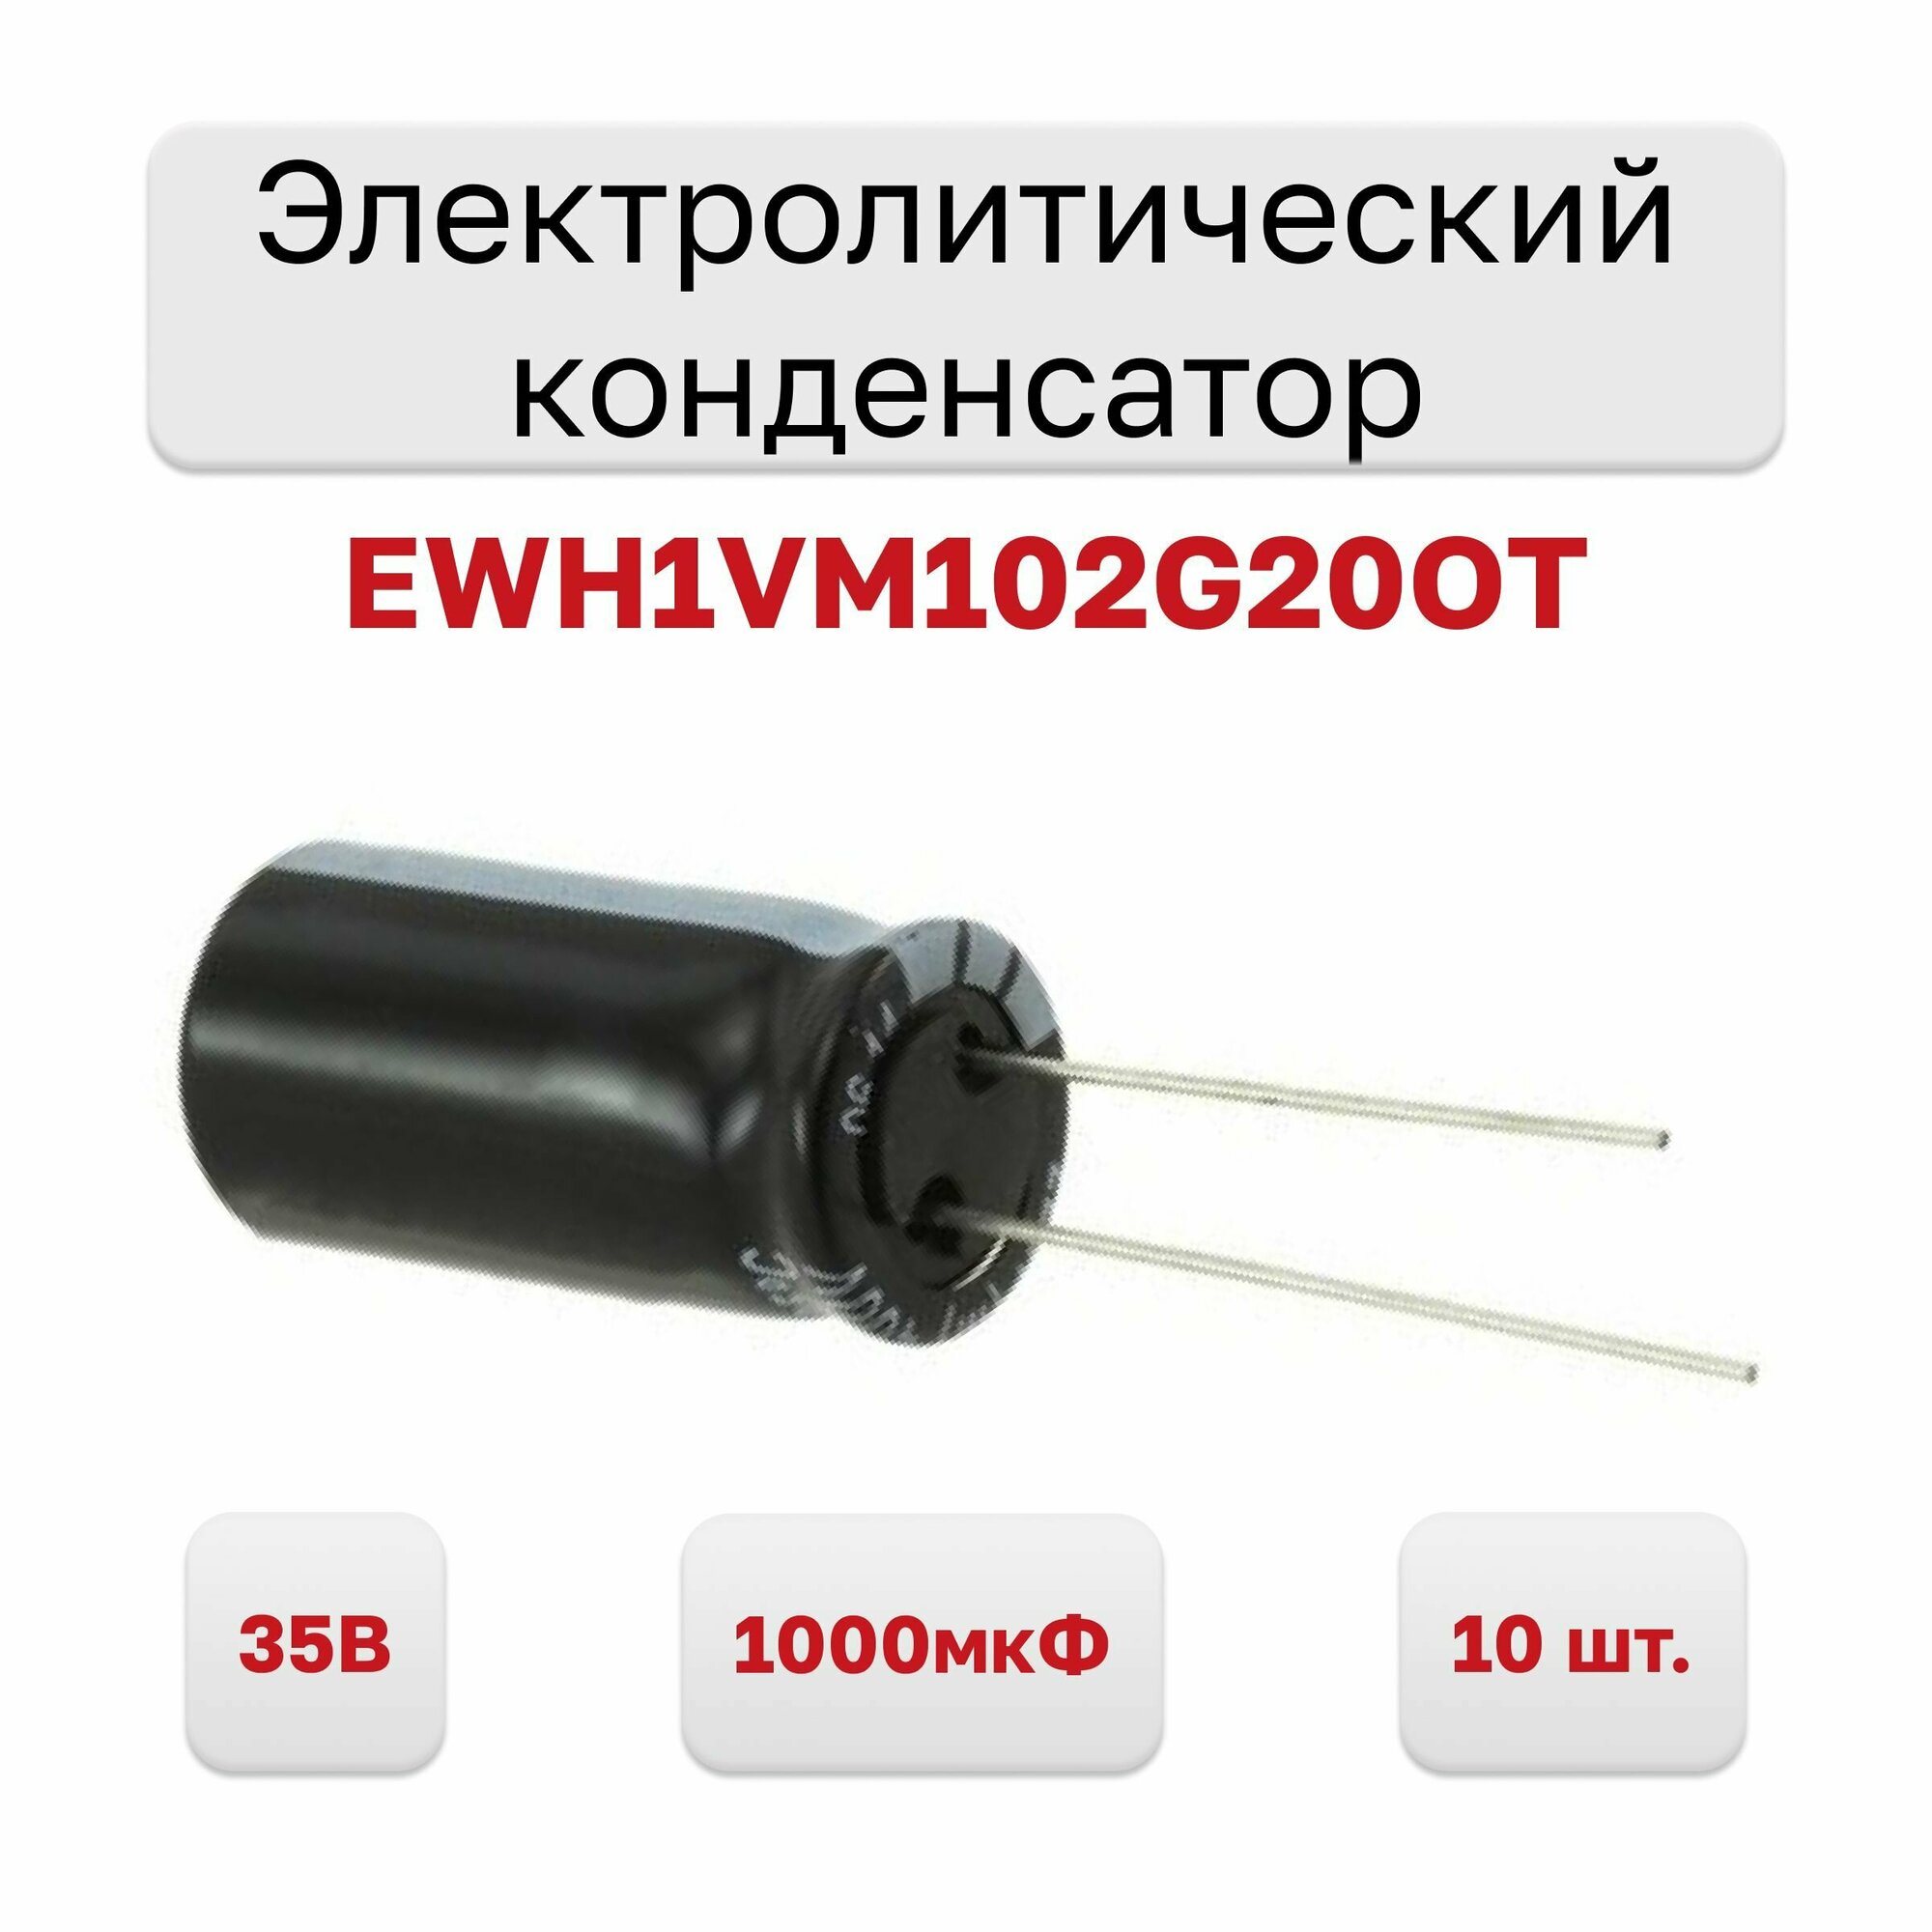 Конденсатор электролитический 35В 1000мкФ 105C EWH1VM102G20OT, 10 шт.